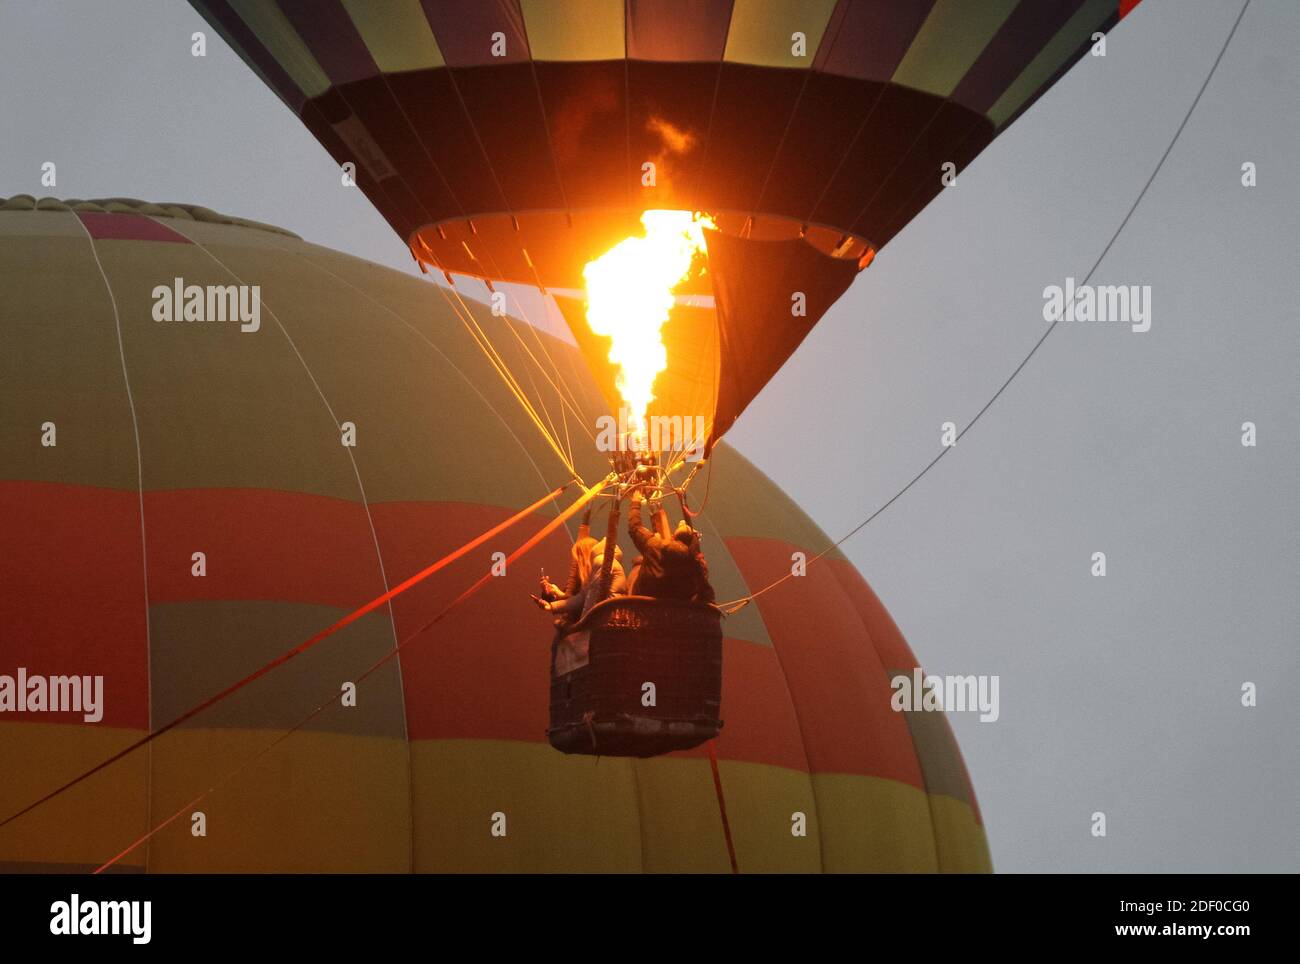 Heißluftballon mit Besuchern in den Himmel während des Festivals steigen.das Heißluftballon-Festival wird von der Heißluftballon-Gesellschaft und der ukrainischen Luftfahrtgesellschaft organisiert, ein Besucher kann auf einem riesigen Ballon mit der Höhe von fünf-stöckigen Gebäude klettern und Fotos machen. Die Veranstaltung wird anlässlich des Jubiläums des Starts des ersten Heißballons in der Geschichte der Menschheit organisiert. Vor 237 Jahren starteten die Montgolfier-Brüder ihre Erfindung in Paris. Seitdem begann die Ära der Luftfahrt. Stockfoto